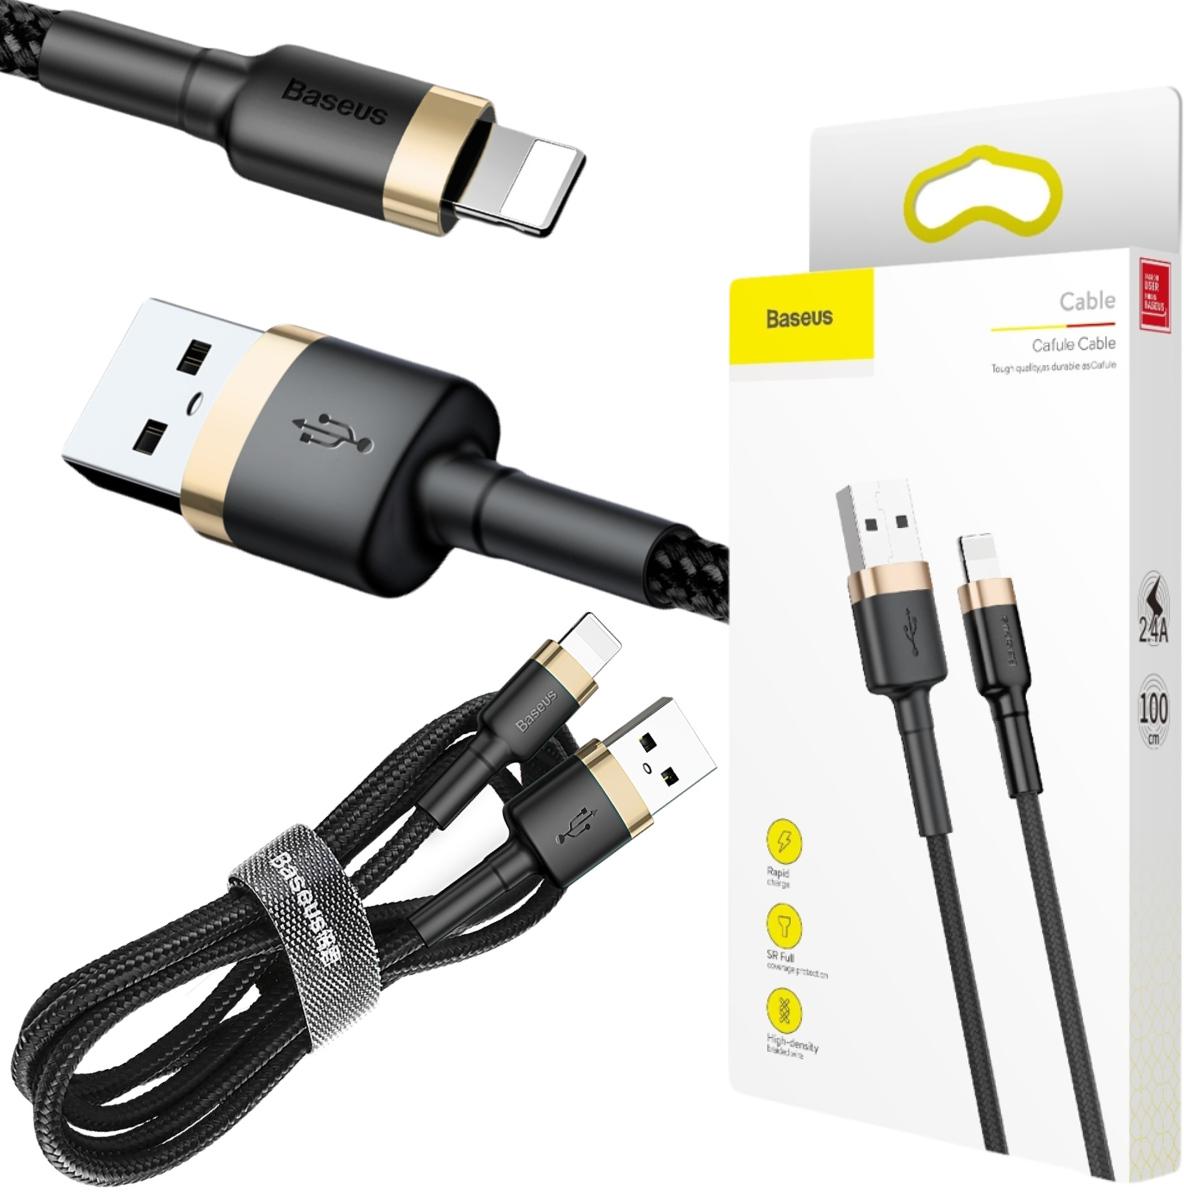 Baseus Cafule Cable wytrzymały nylonowy kabel USB / Lightning QC 3.0 2.4A 1m w oplocie (CALKLF-BV1) - najważniejsze cechy: